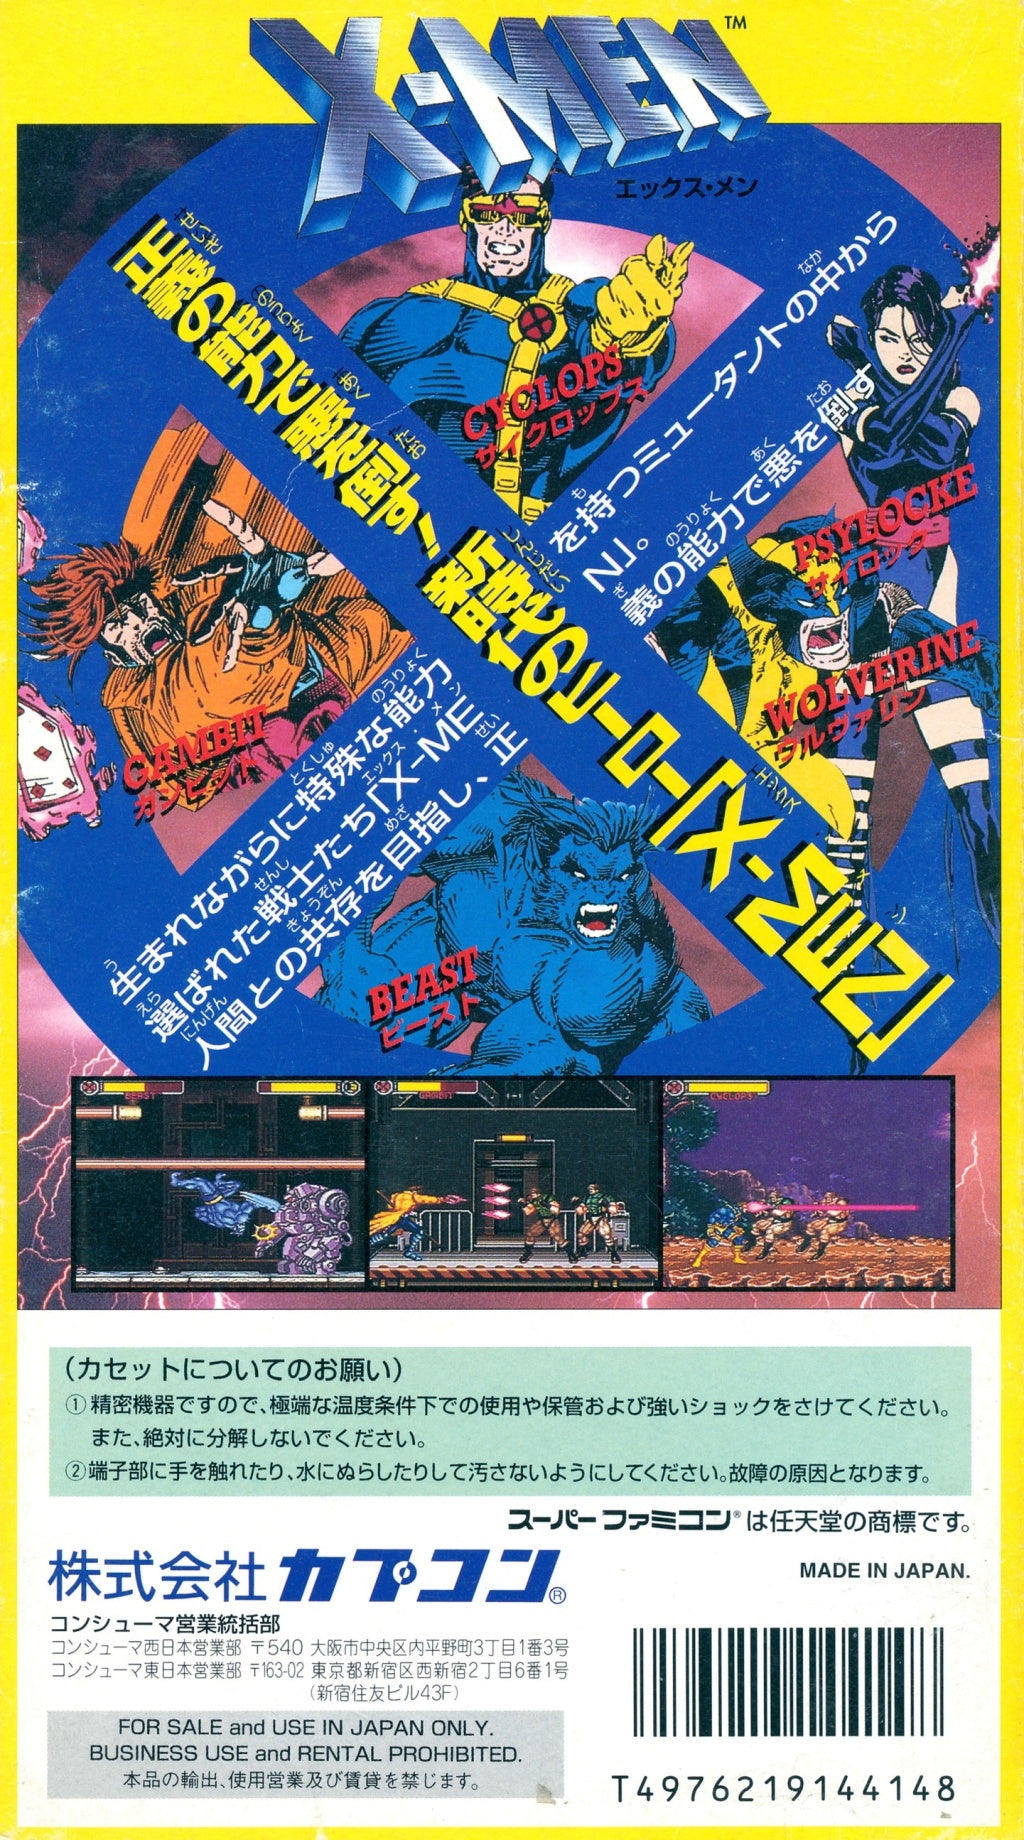 X-Men: Mutant Apocalypse - (SFC) Super Famicom [Pre-Owned] (Japanese Import) Video Games Capcom   